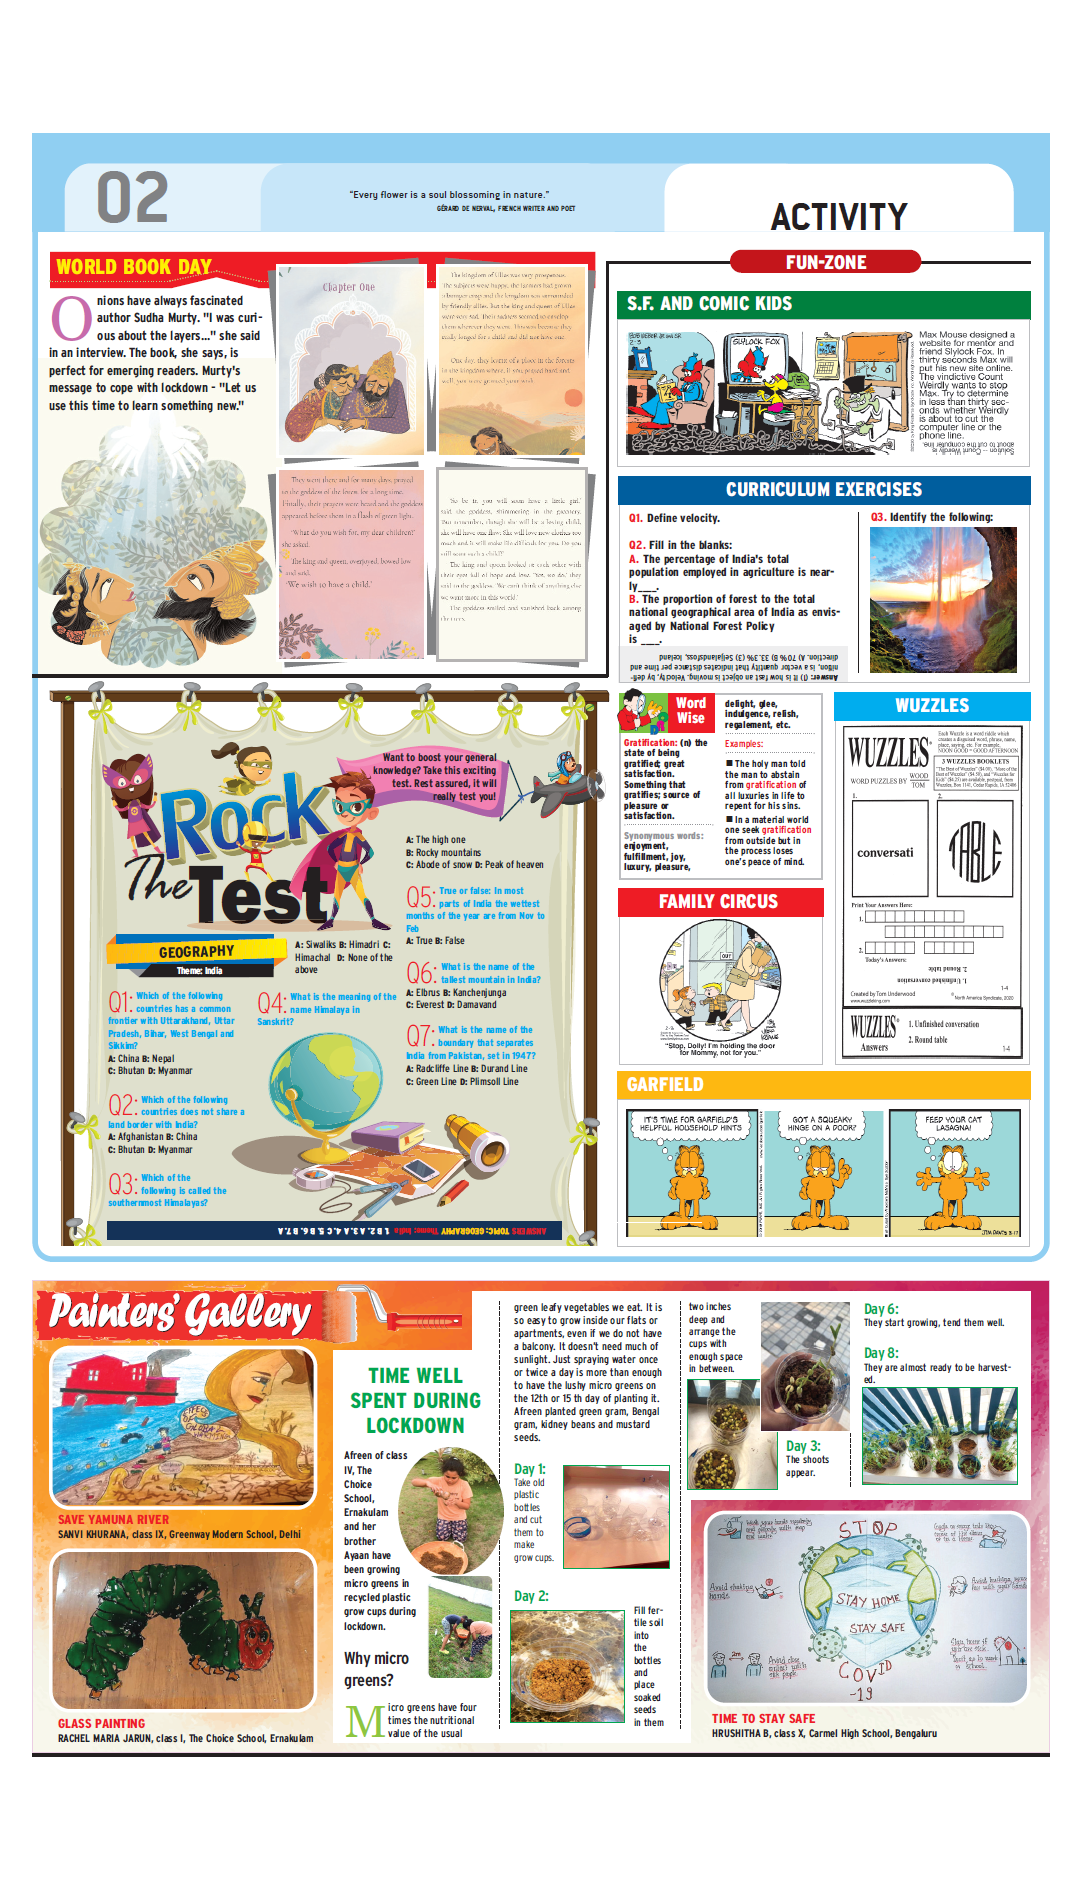 Times-NIE-Web-Ed-April 23 - page 2